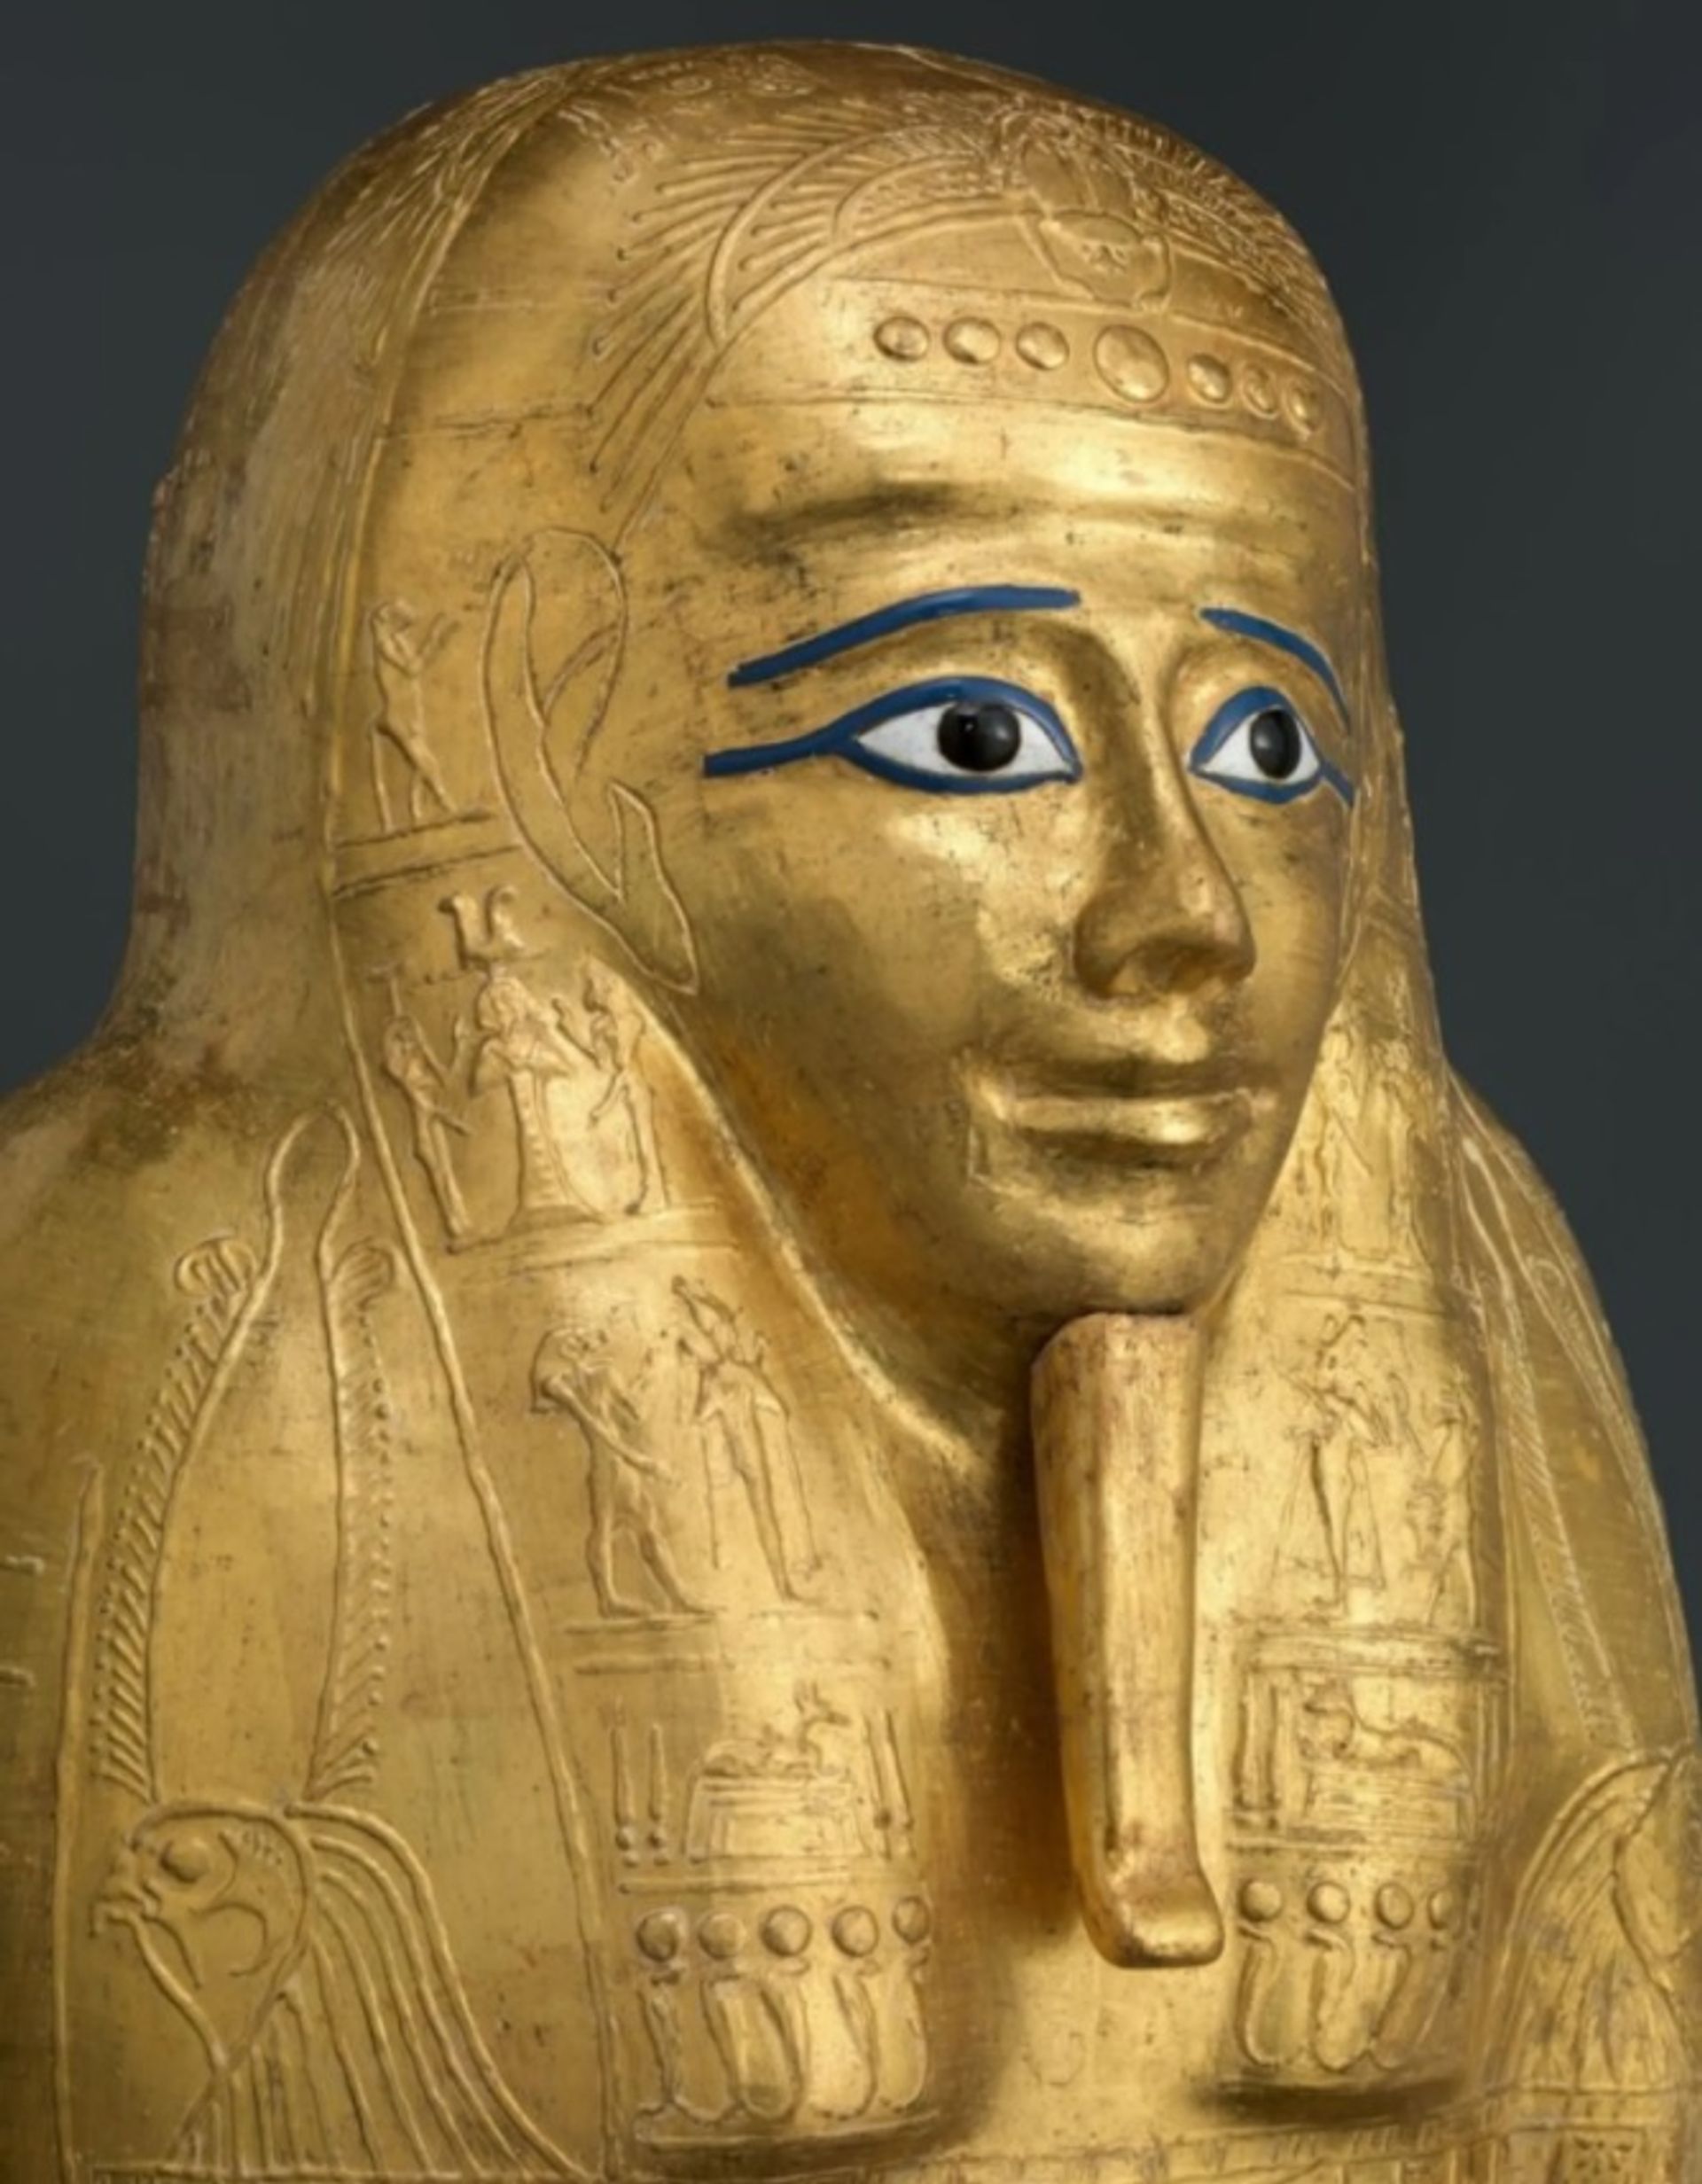 הסרקופג המוזהב של נג'מנך, שהוחזר למצרים ב-2019

באדיבות מוזיאון המטרופוליטן לאמנות